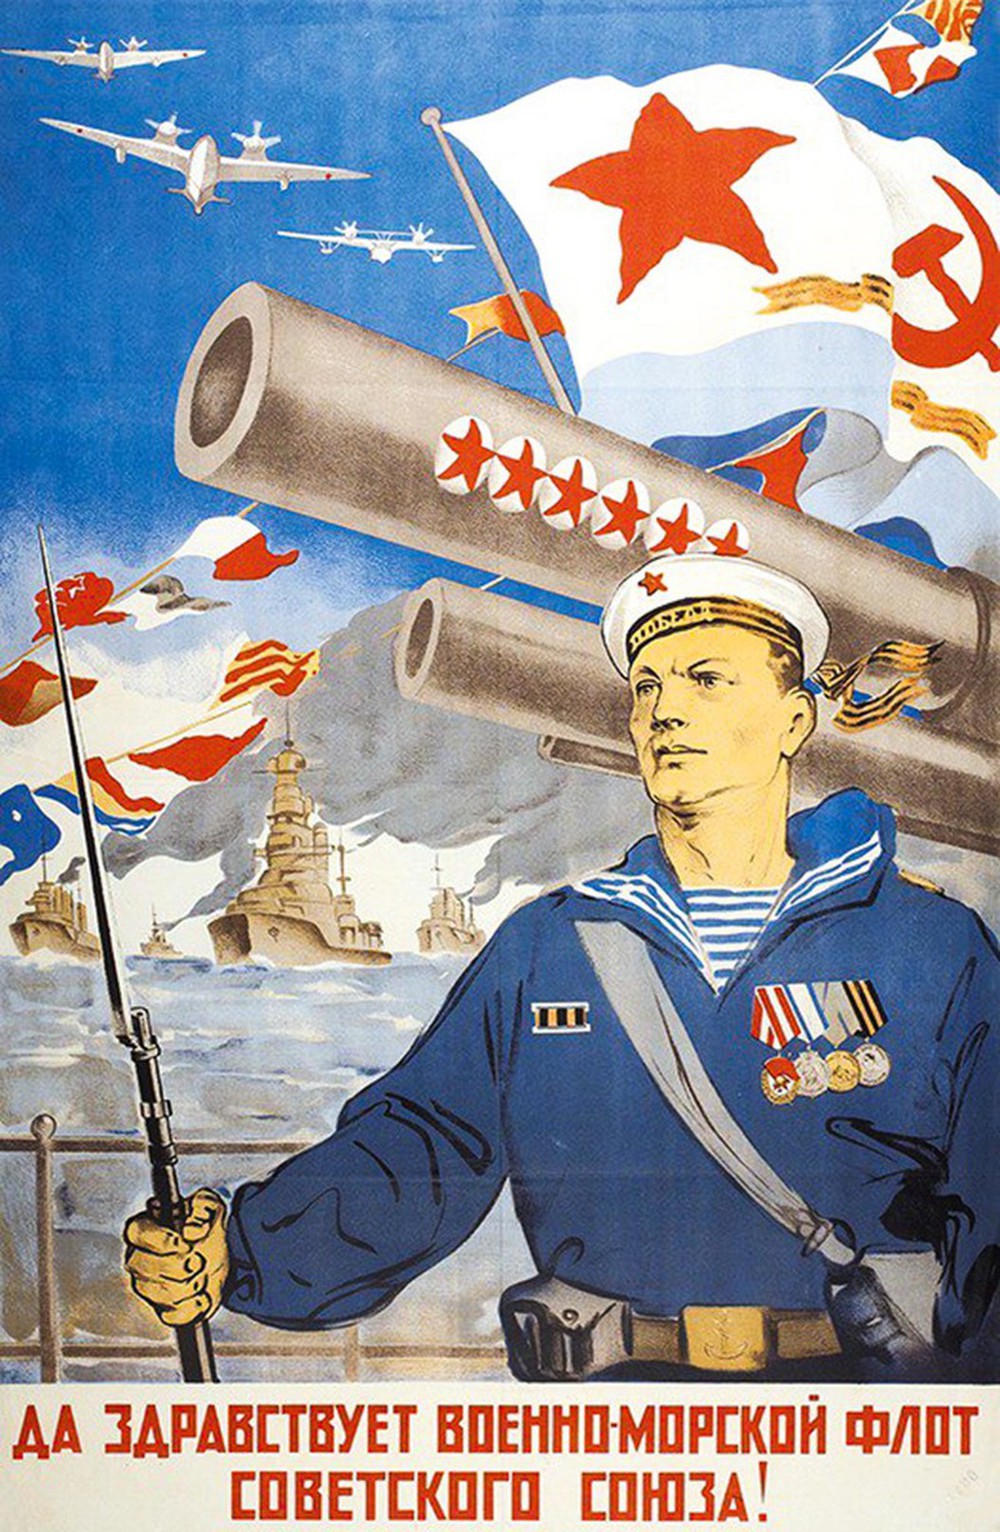 Hải quân Liên Xô “hùng mạnh” qua loạt tranh tuyên truyền sục sôi - Ảnh 13.